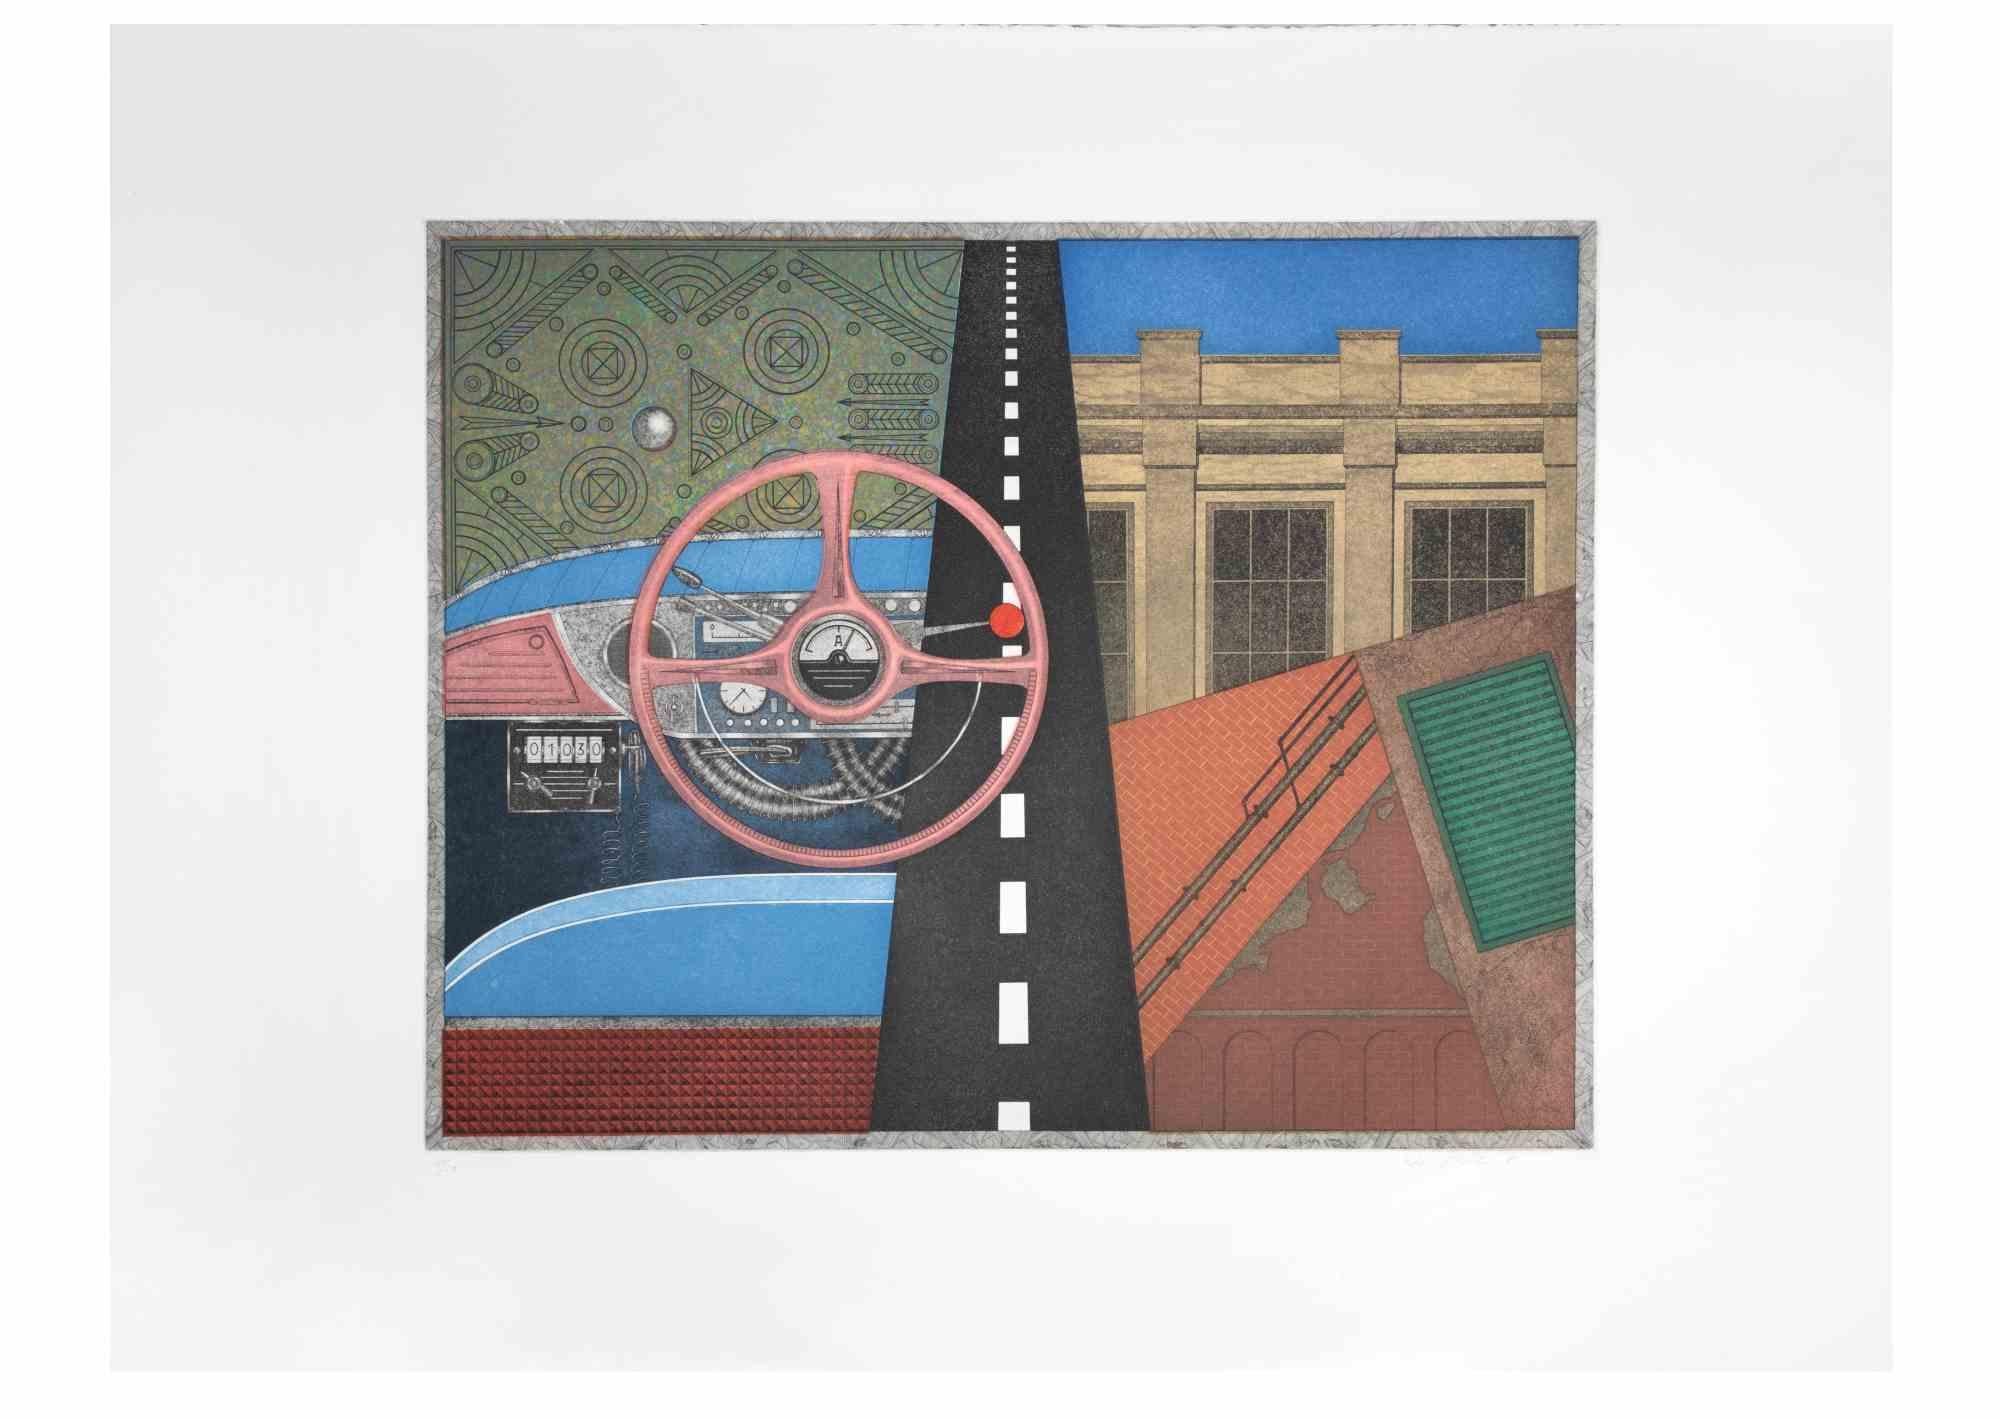 Taxi : volant est une œuvre d'art contemporain réalisée par l'artiste Fifo Stricker en 1982.

Aquatinte et gravure en couleurs mixtes. 

Signé et daté à la main par l'artiste dans la marge inférieure droite.

Numéroté dans la marge inférieure